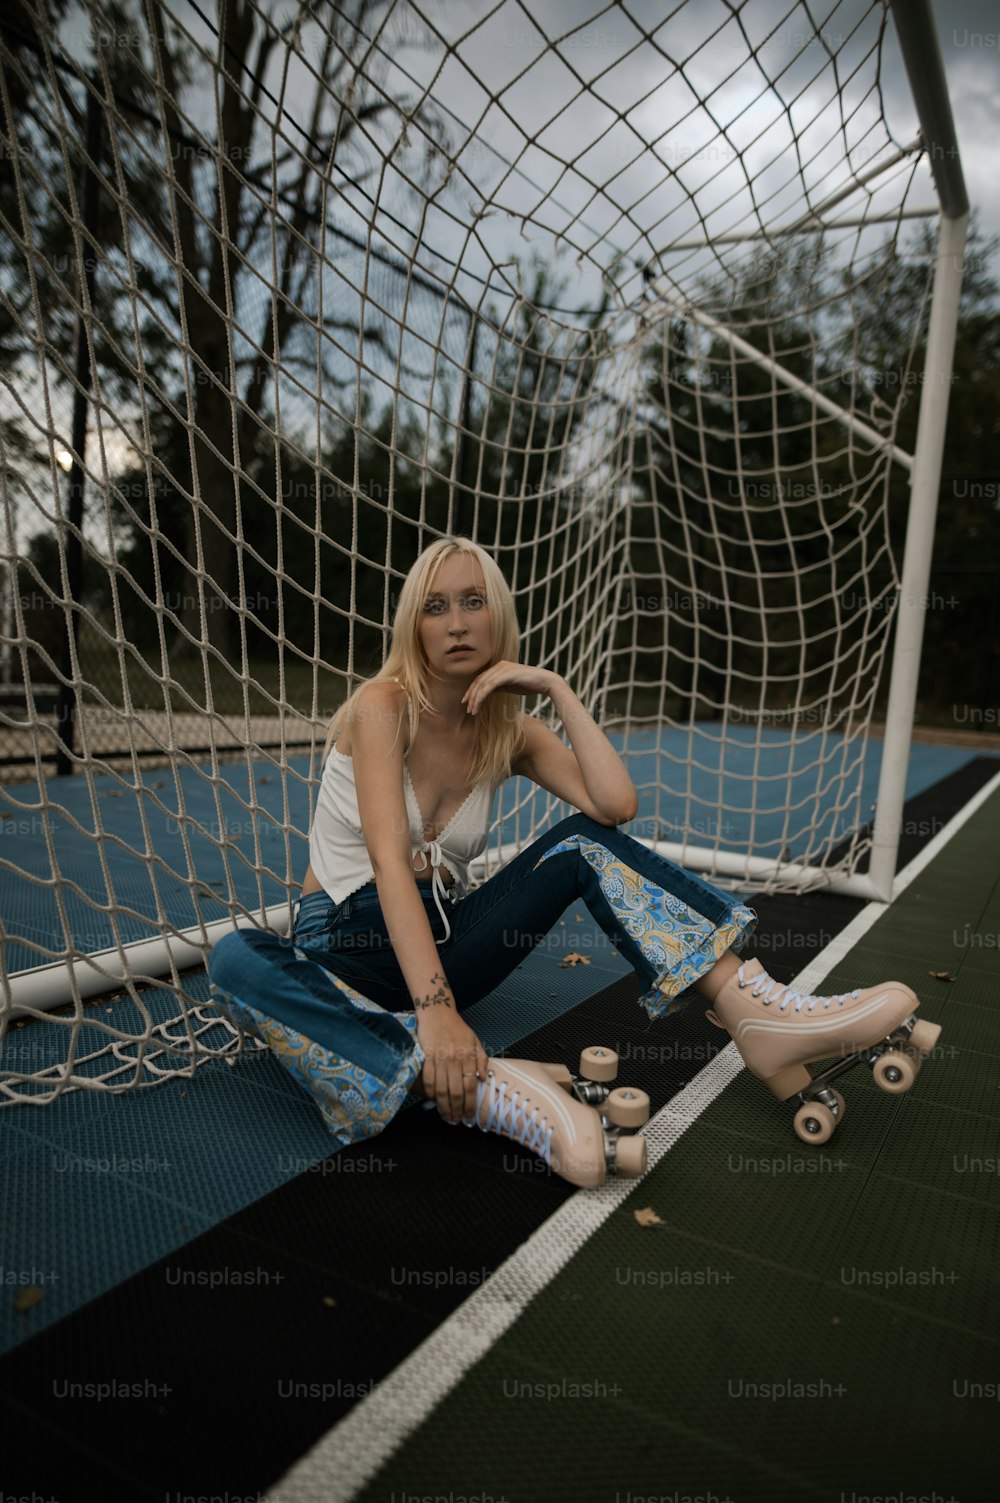 Una donna seduta a terra accanto a una rete da calcio